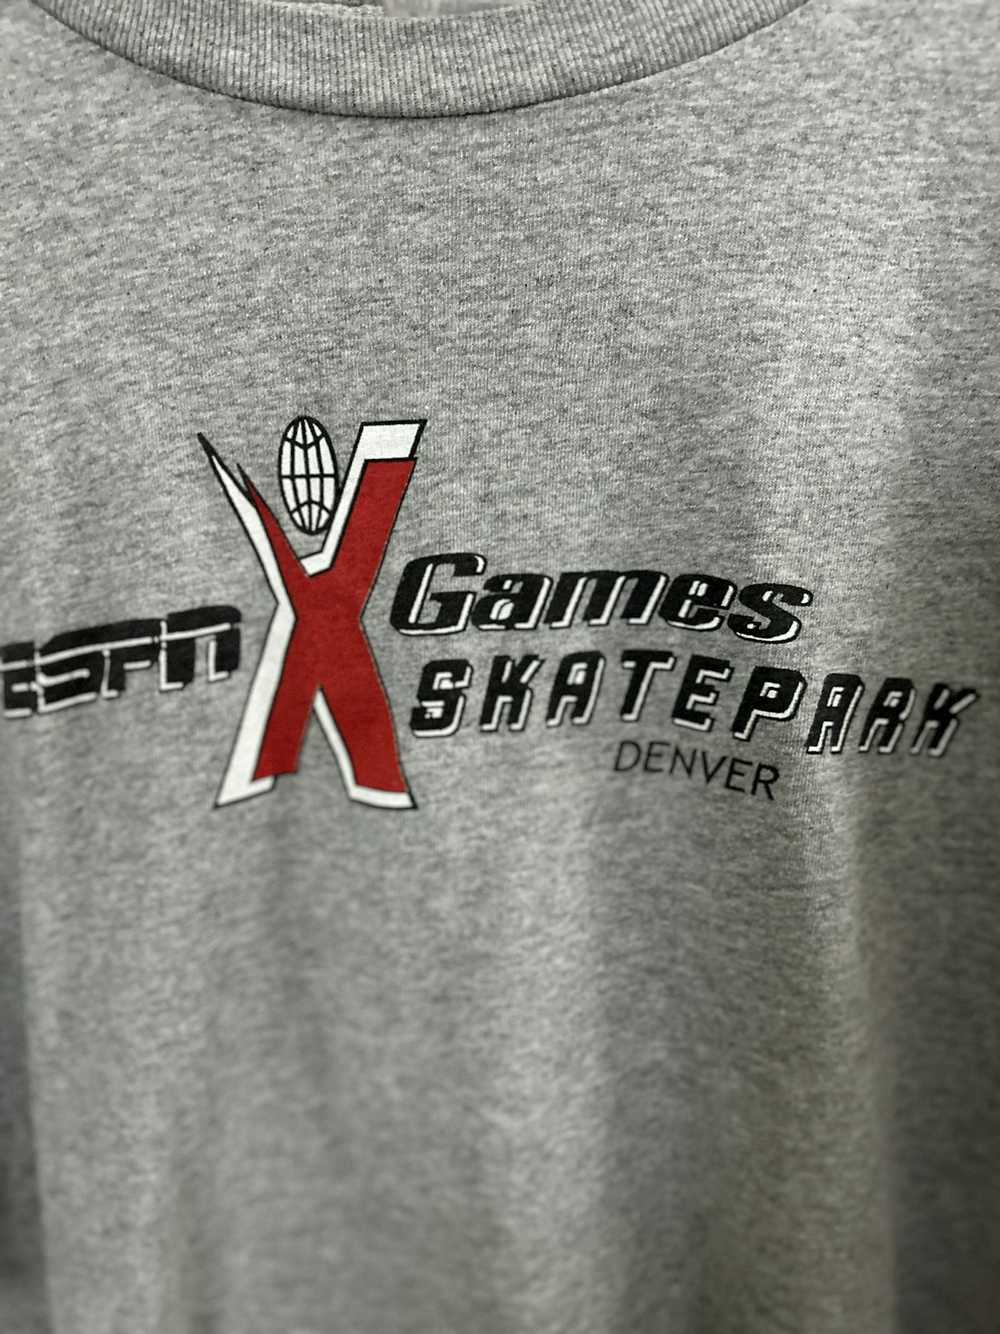 Delta × Vintage Denver X Games Skatepark - image 2